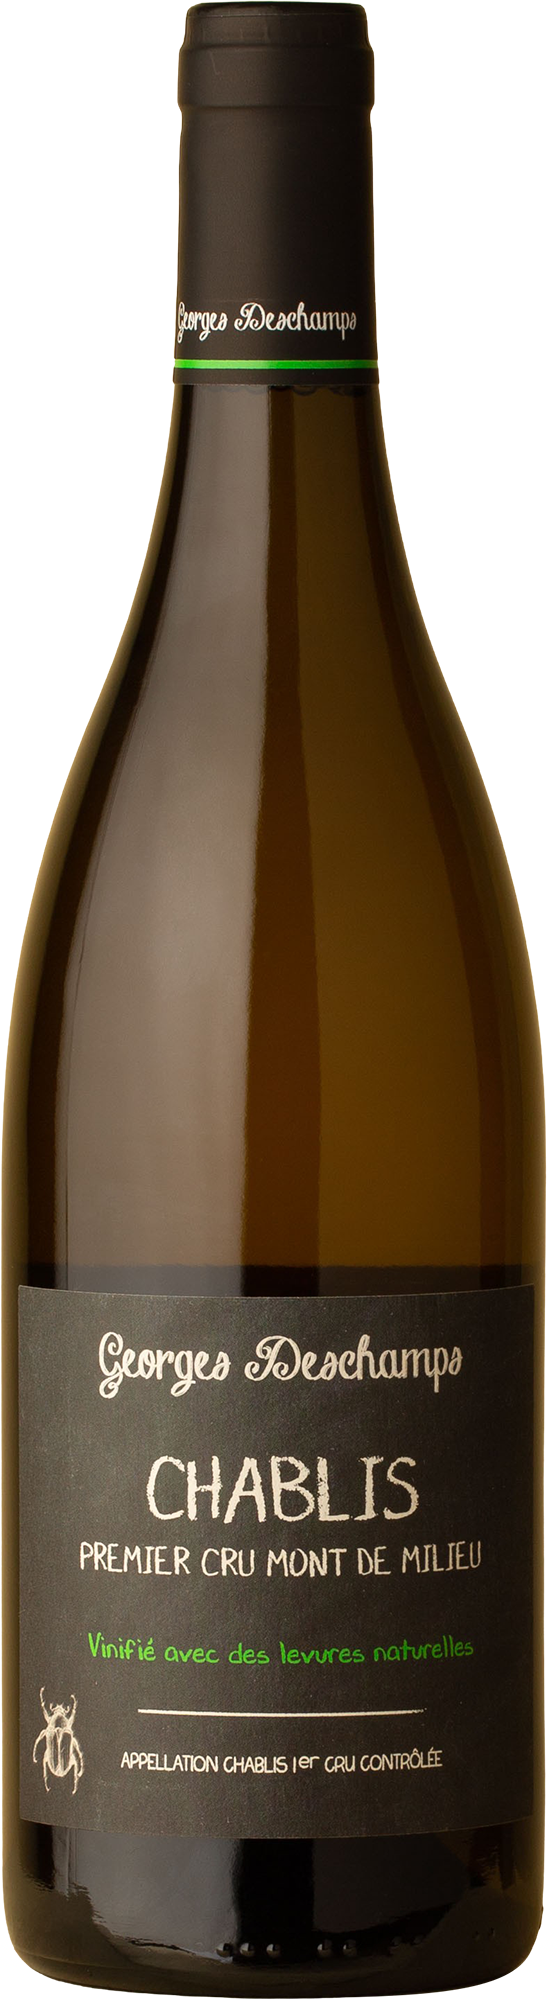 Georges Deschamps - Chablis 1er Cru Mont de Milieu Chardonnay 2019 White Wine